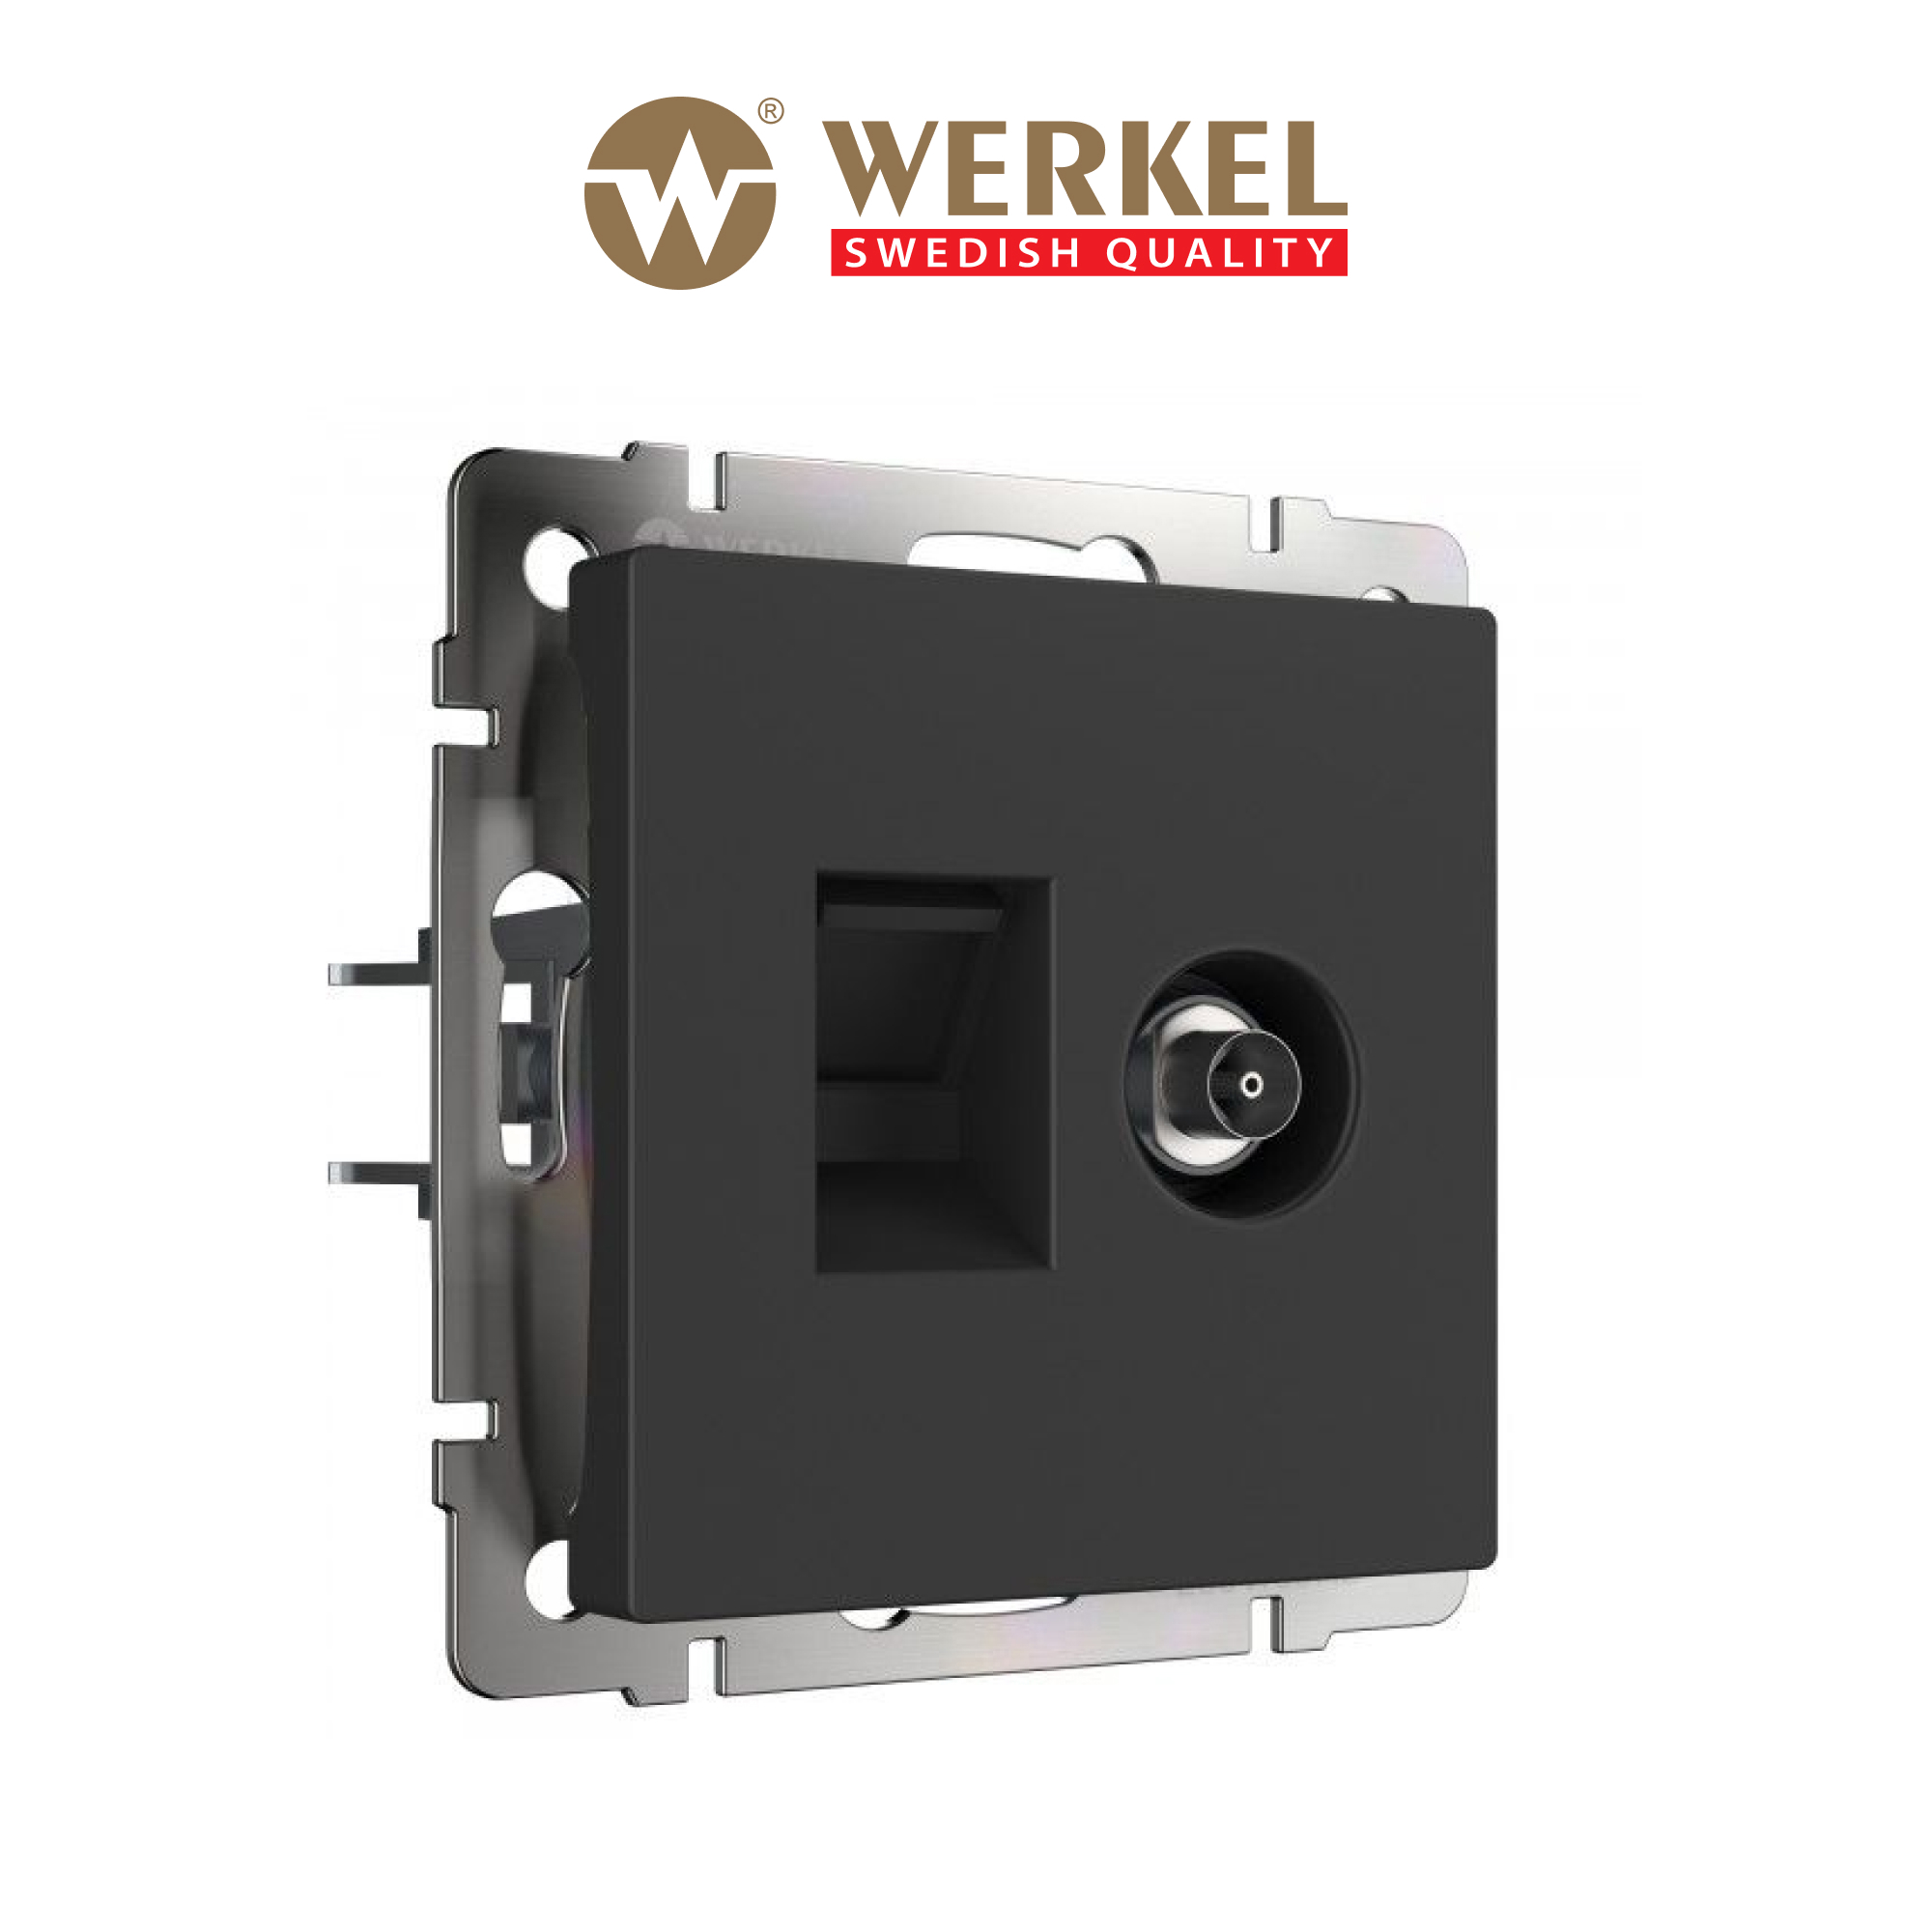  ТВ+Ethernet RJ-45 встраиваемая Werkel W1181308 цвет черный .